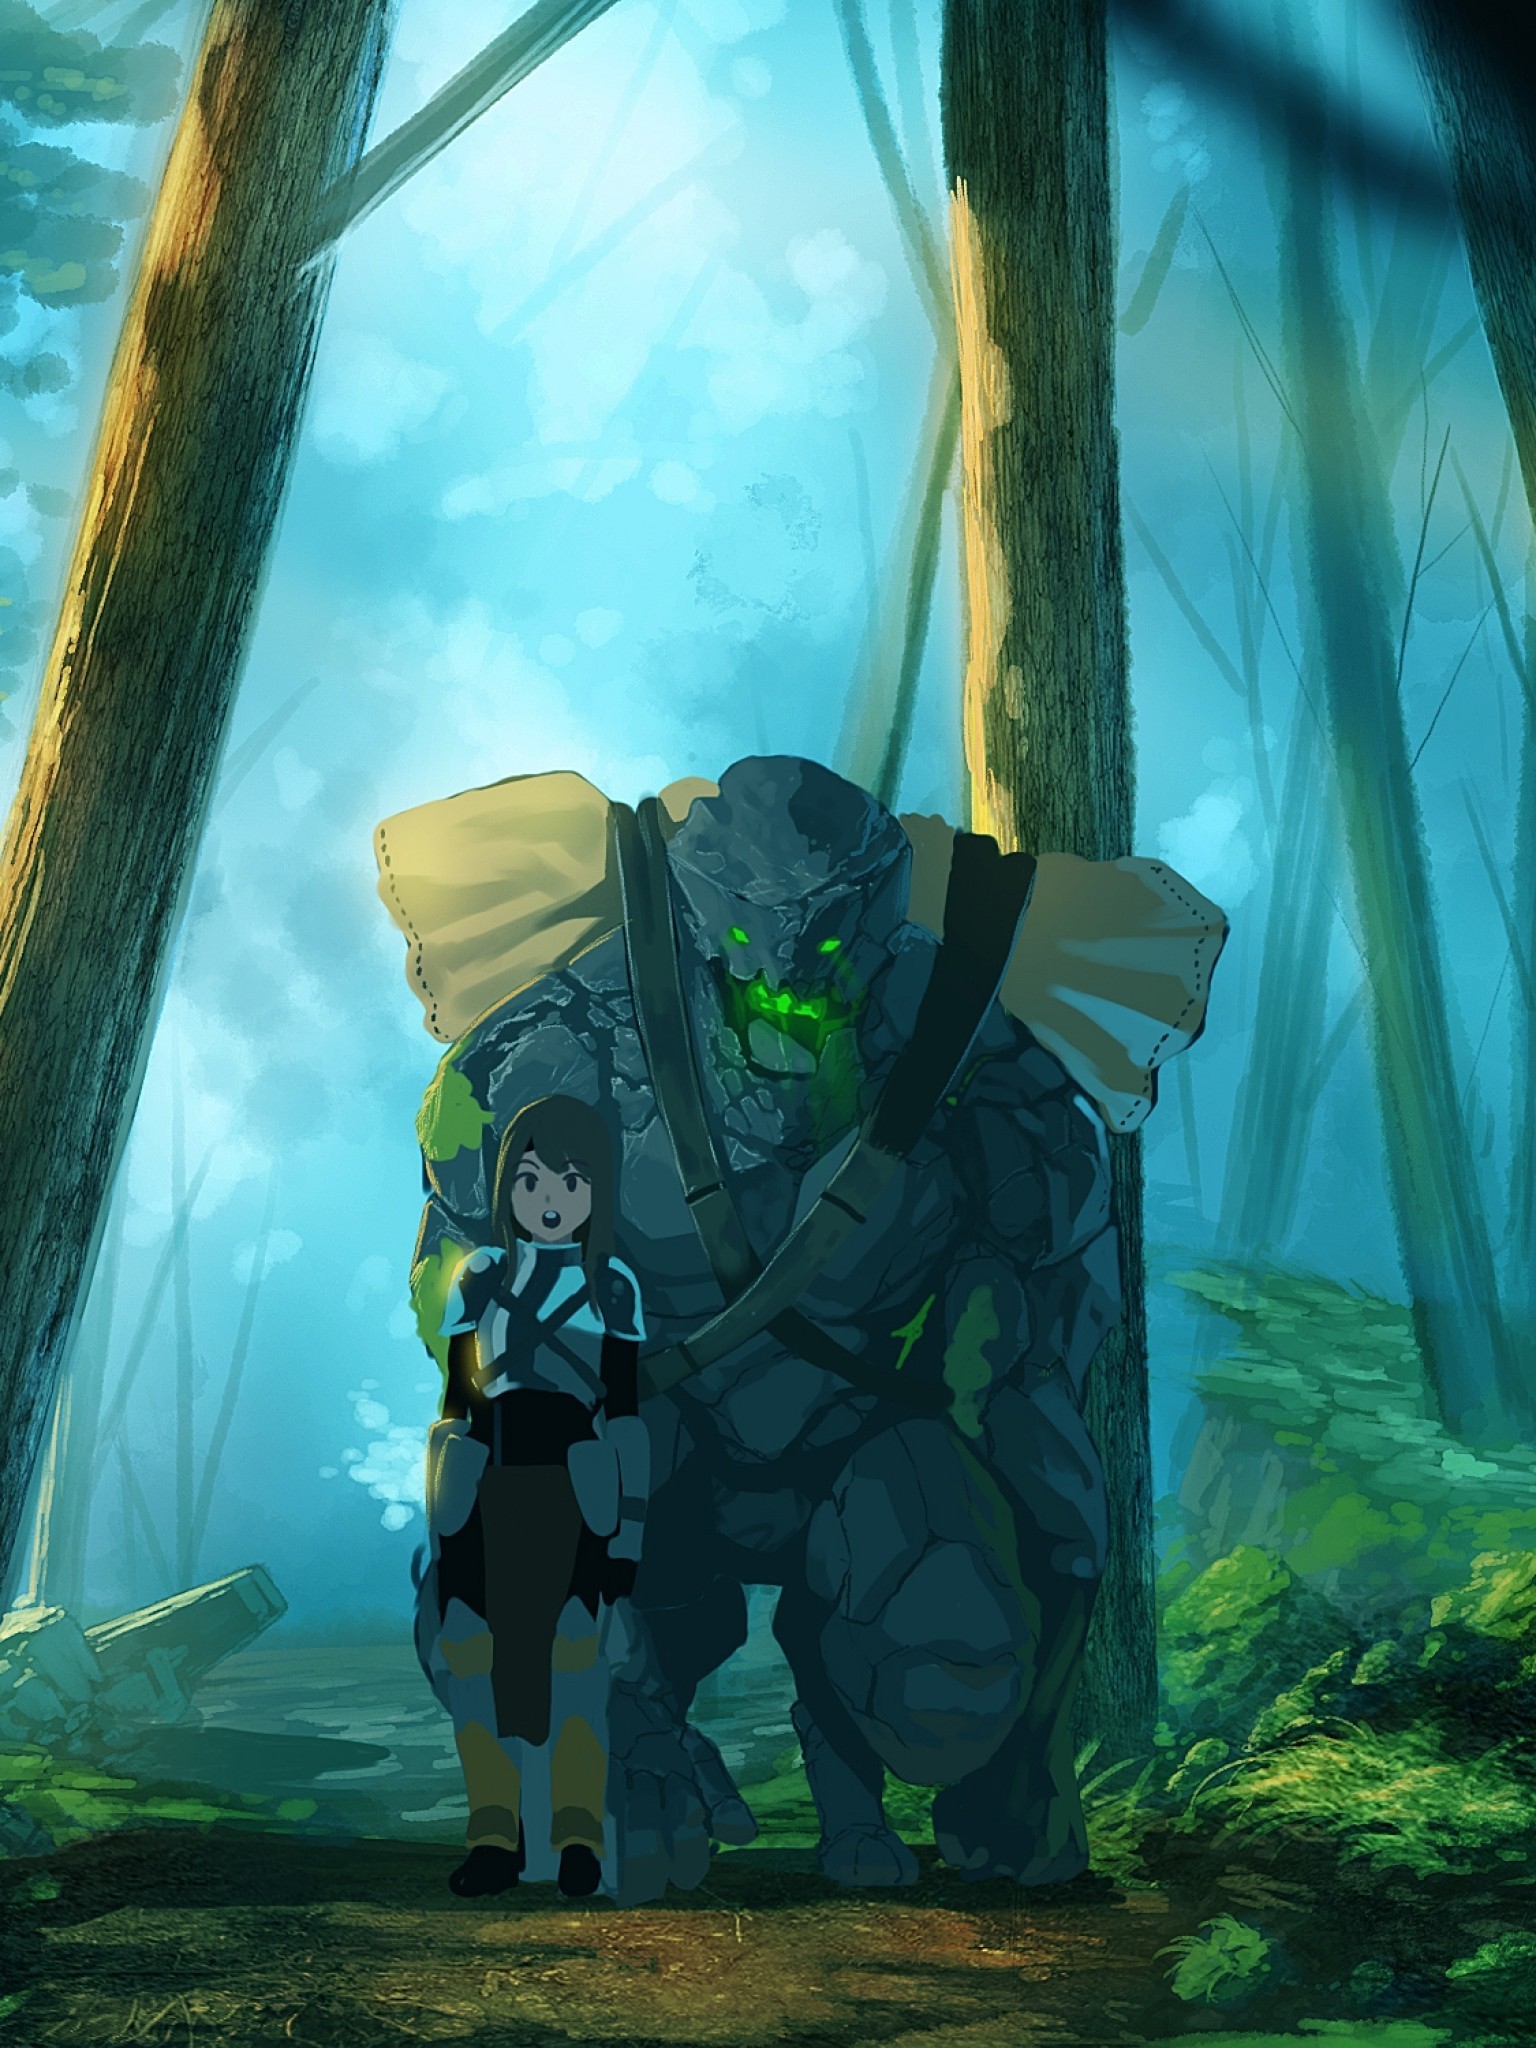 Anime Golem, Forest, Trees, Anime Girl, Walking, Fantasy - Fantasy Girl Walking In Forest - HD Wallpaper 